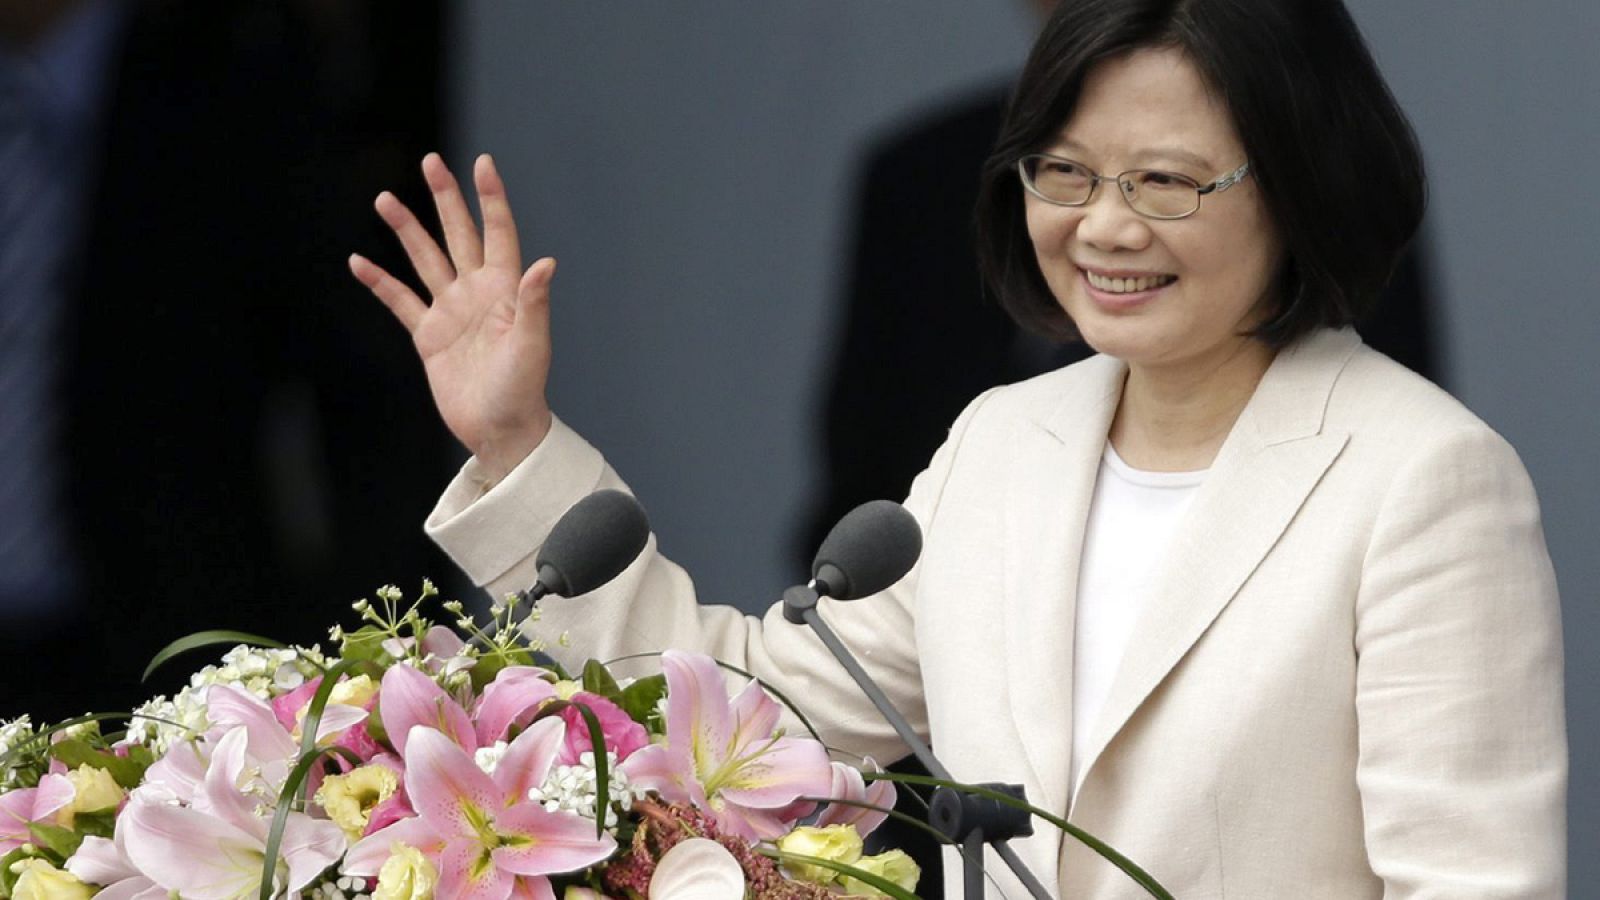 La nueva presidenta independentista de Taiwán toma posesión del cargo